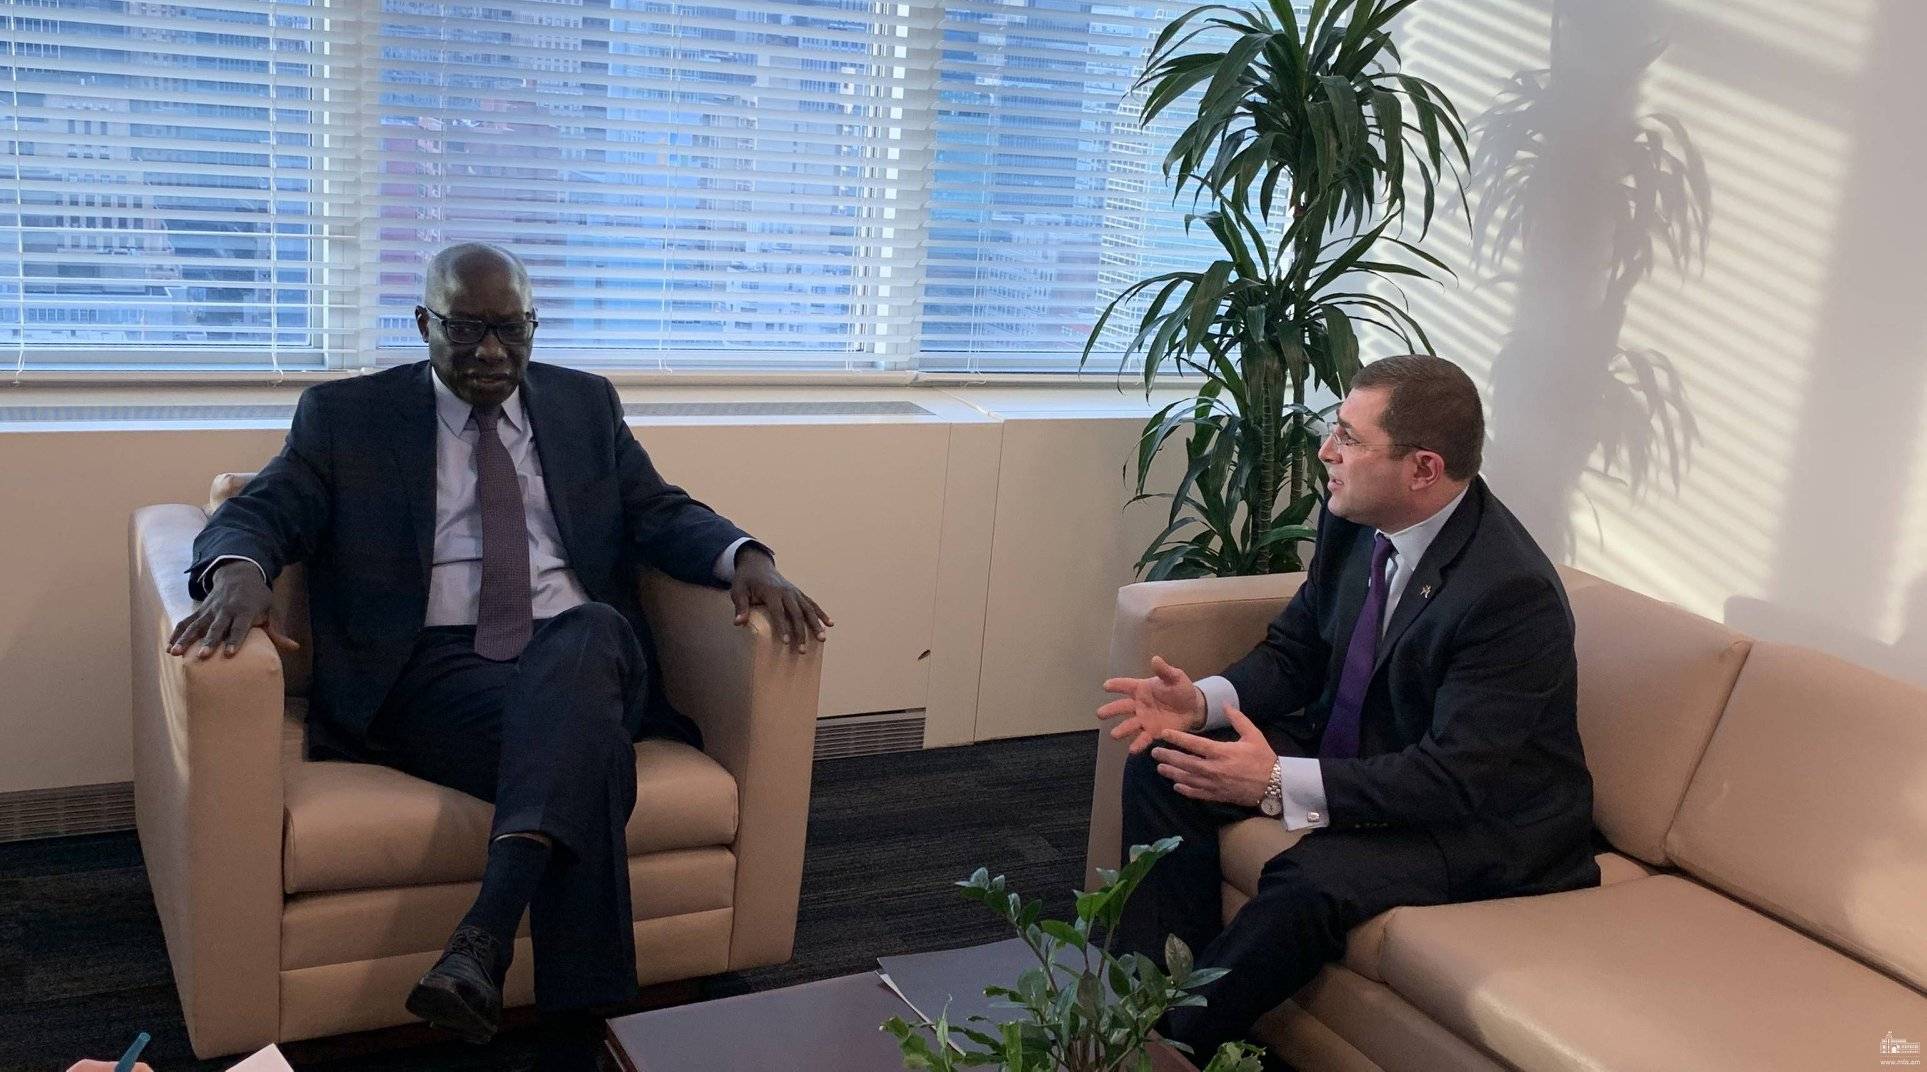 ՀՀ մշտական ներկայացուցիչը հանդիպեց Ցեղասպանության կանխարգելման հարցերով ՄԱԿ-ի Գլխավոր քարտուղարի հատուկ խորհրդական Ադամա Դիենգի հետ